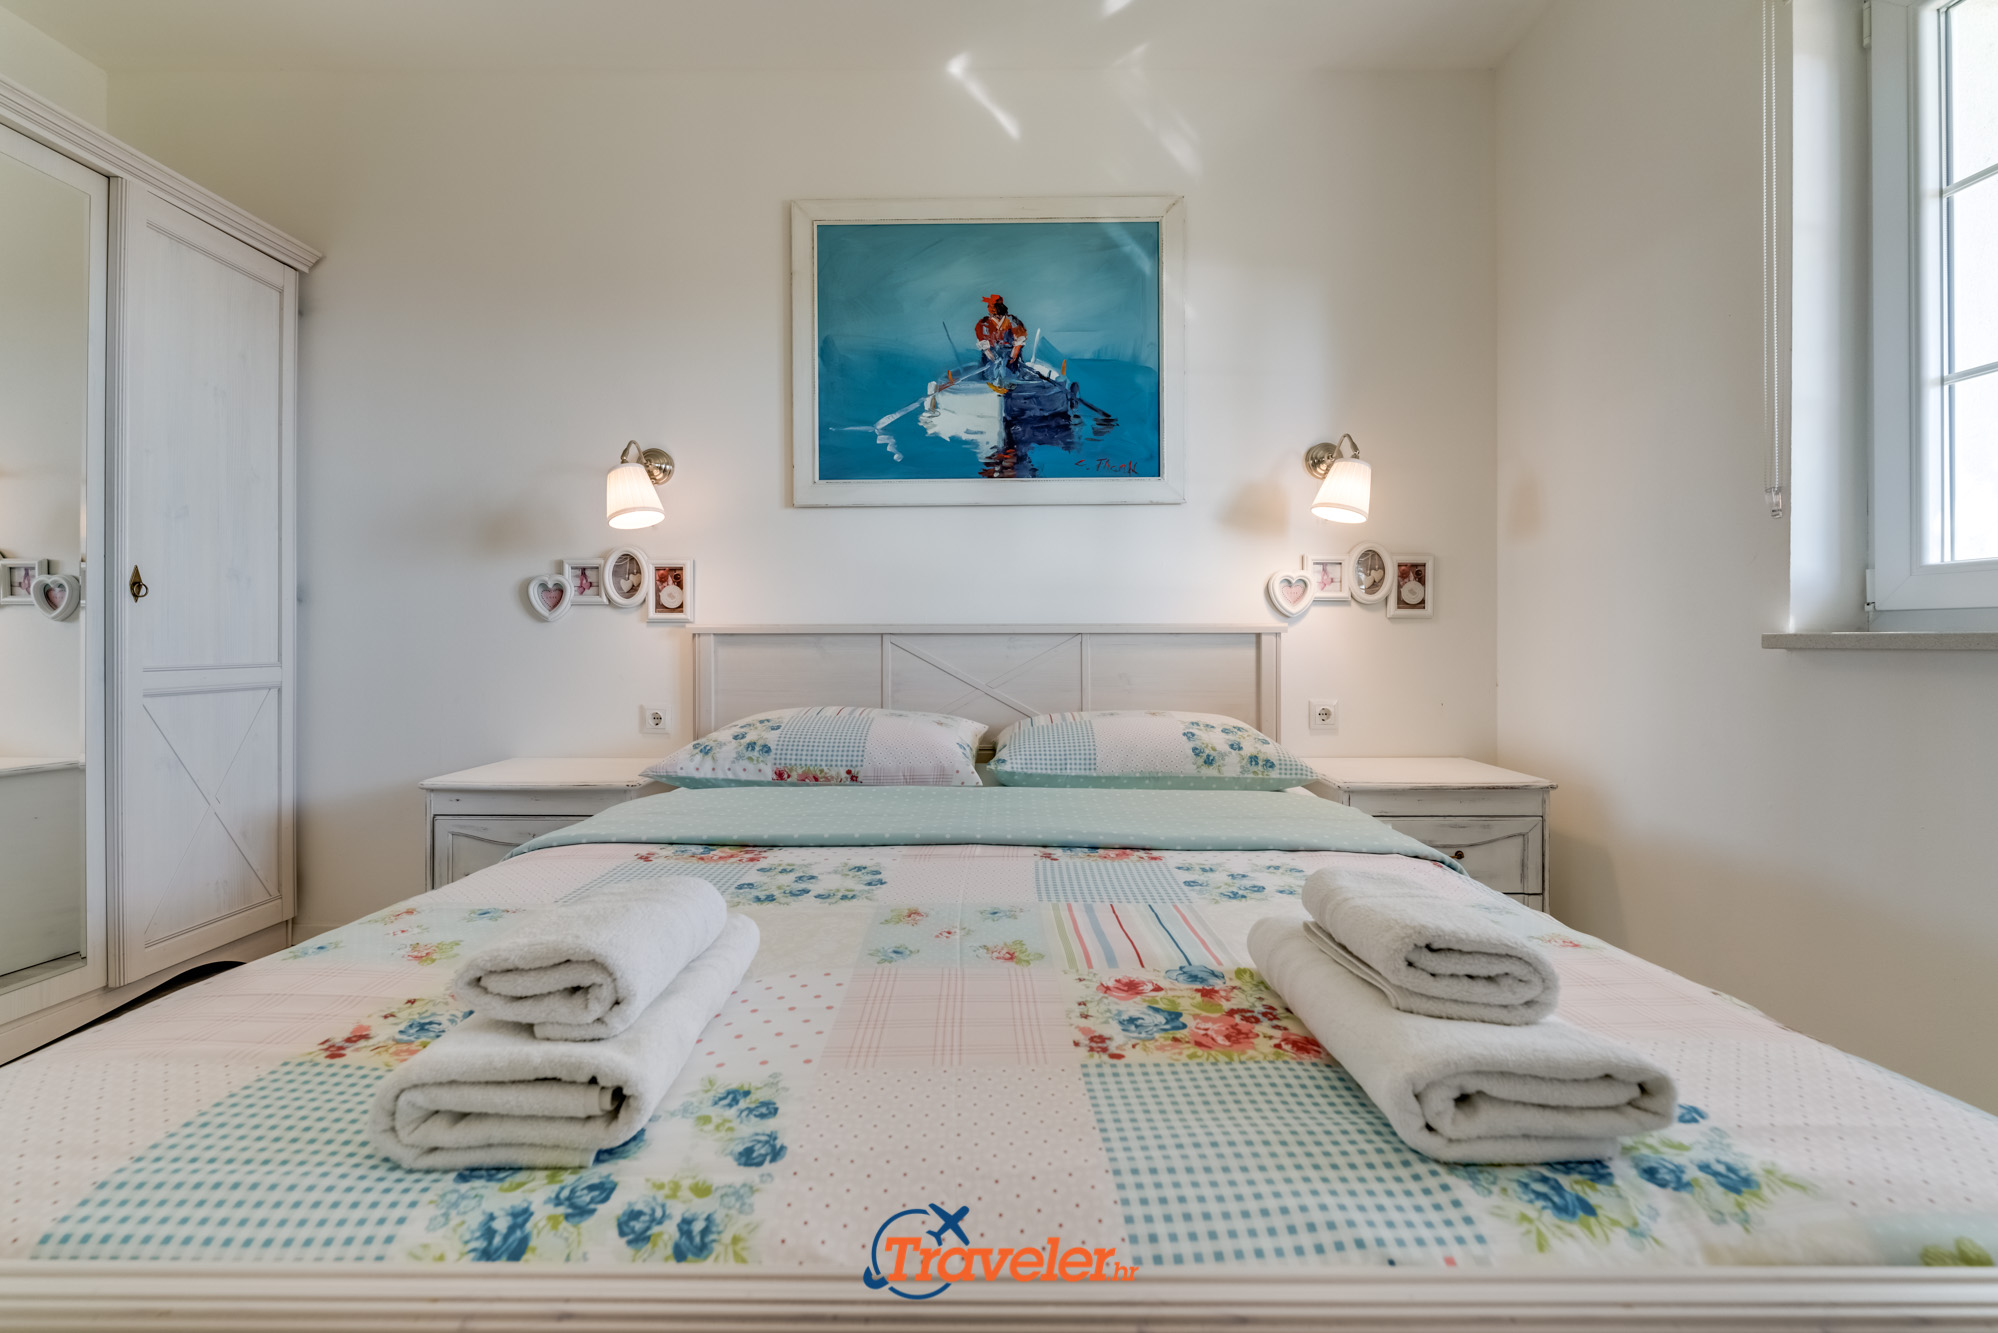 Ferienvilla mit Pool in Kroatien, Schlafzimmer mit weißem Doppelbett und weißem Kleiderschrank